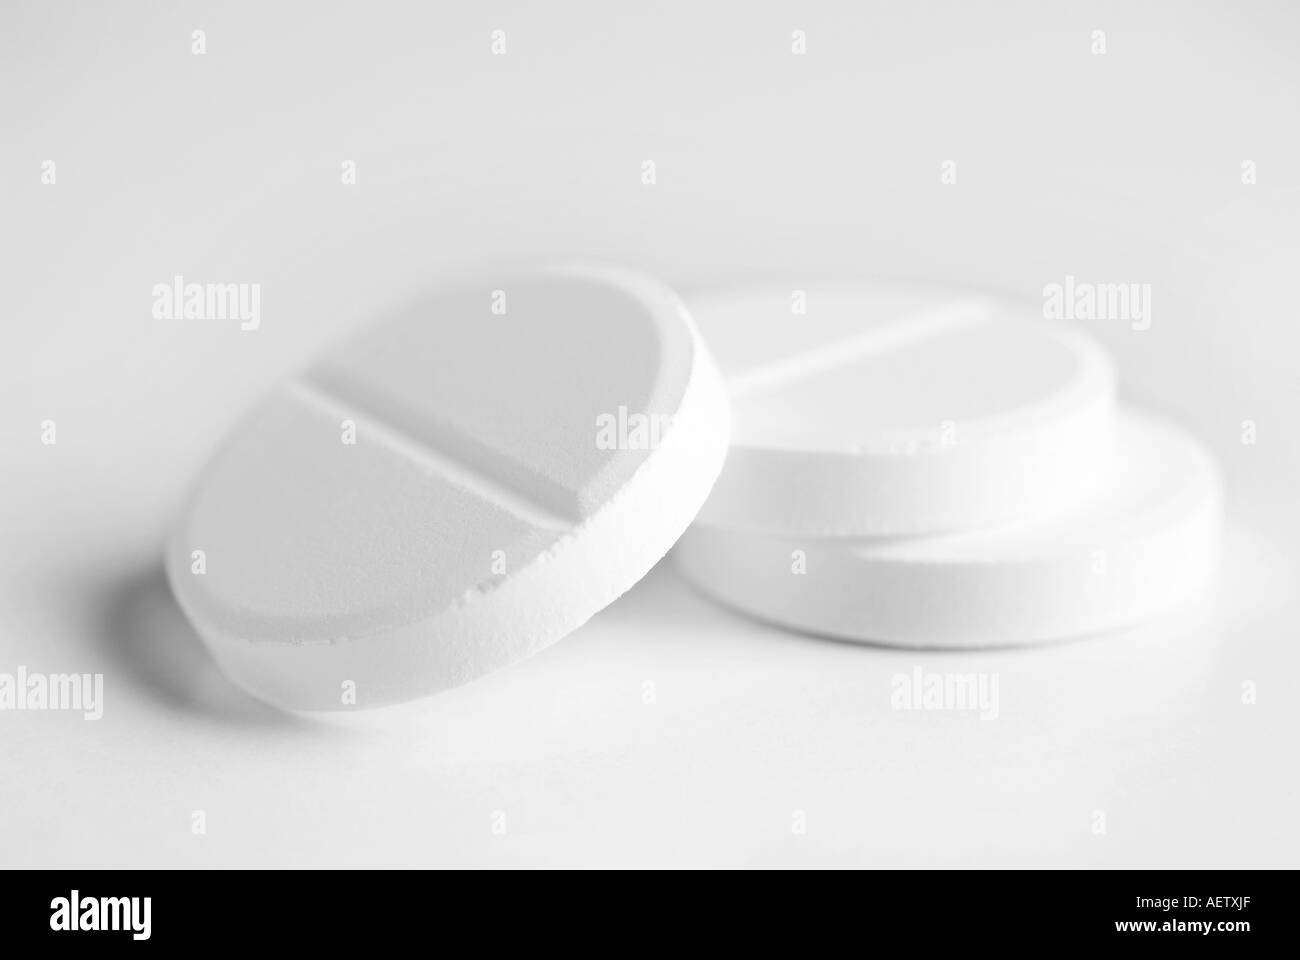 White pills on white background Stock Photo